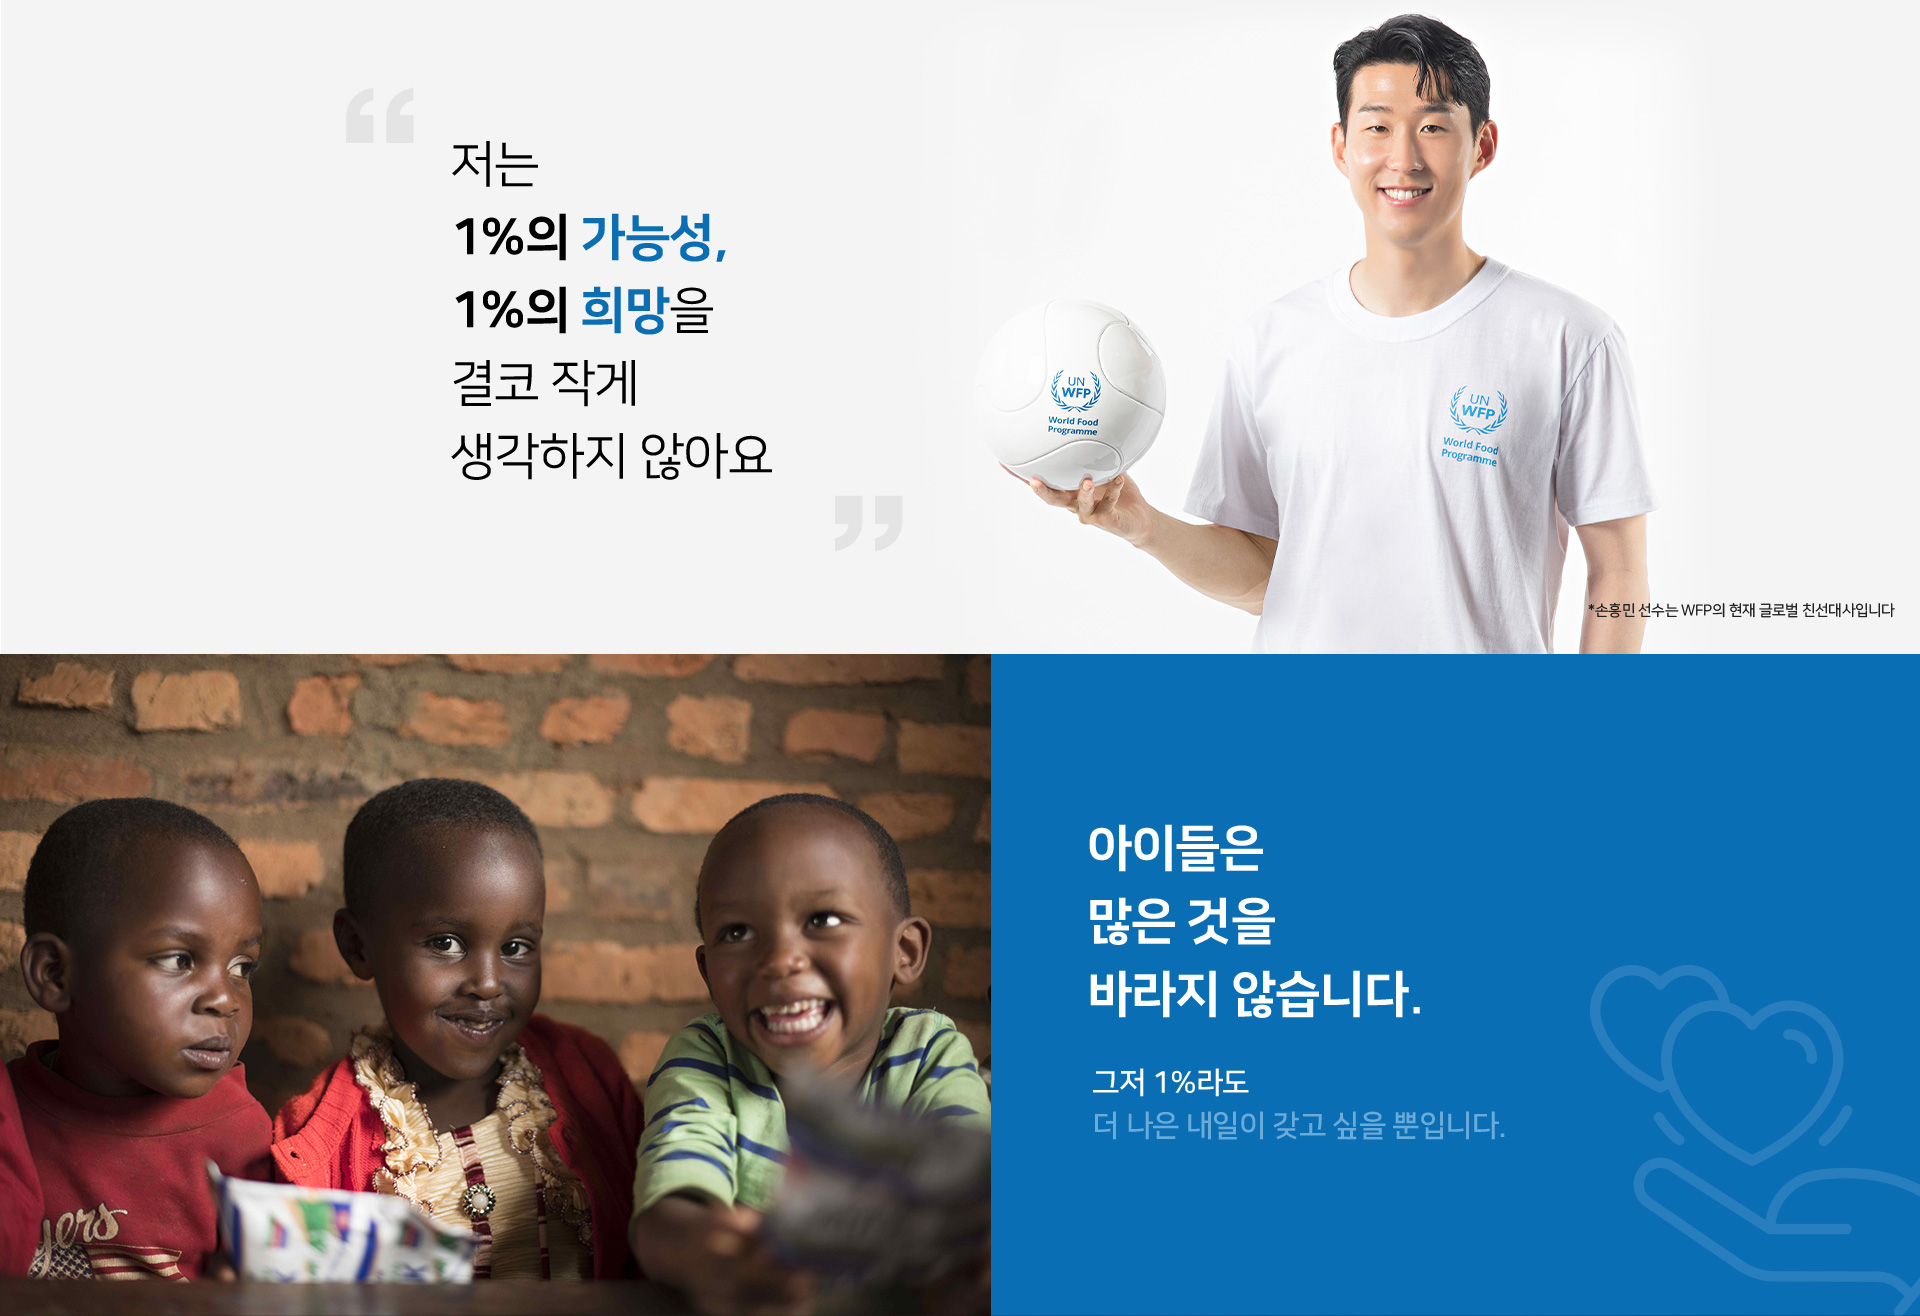 손흥민 선수는 WFP의 현재 글로벌 친선대사입니다.